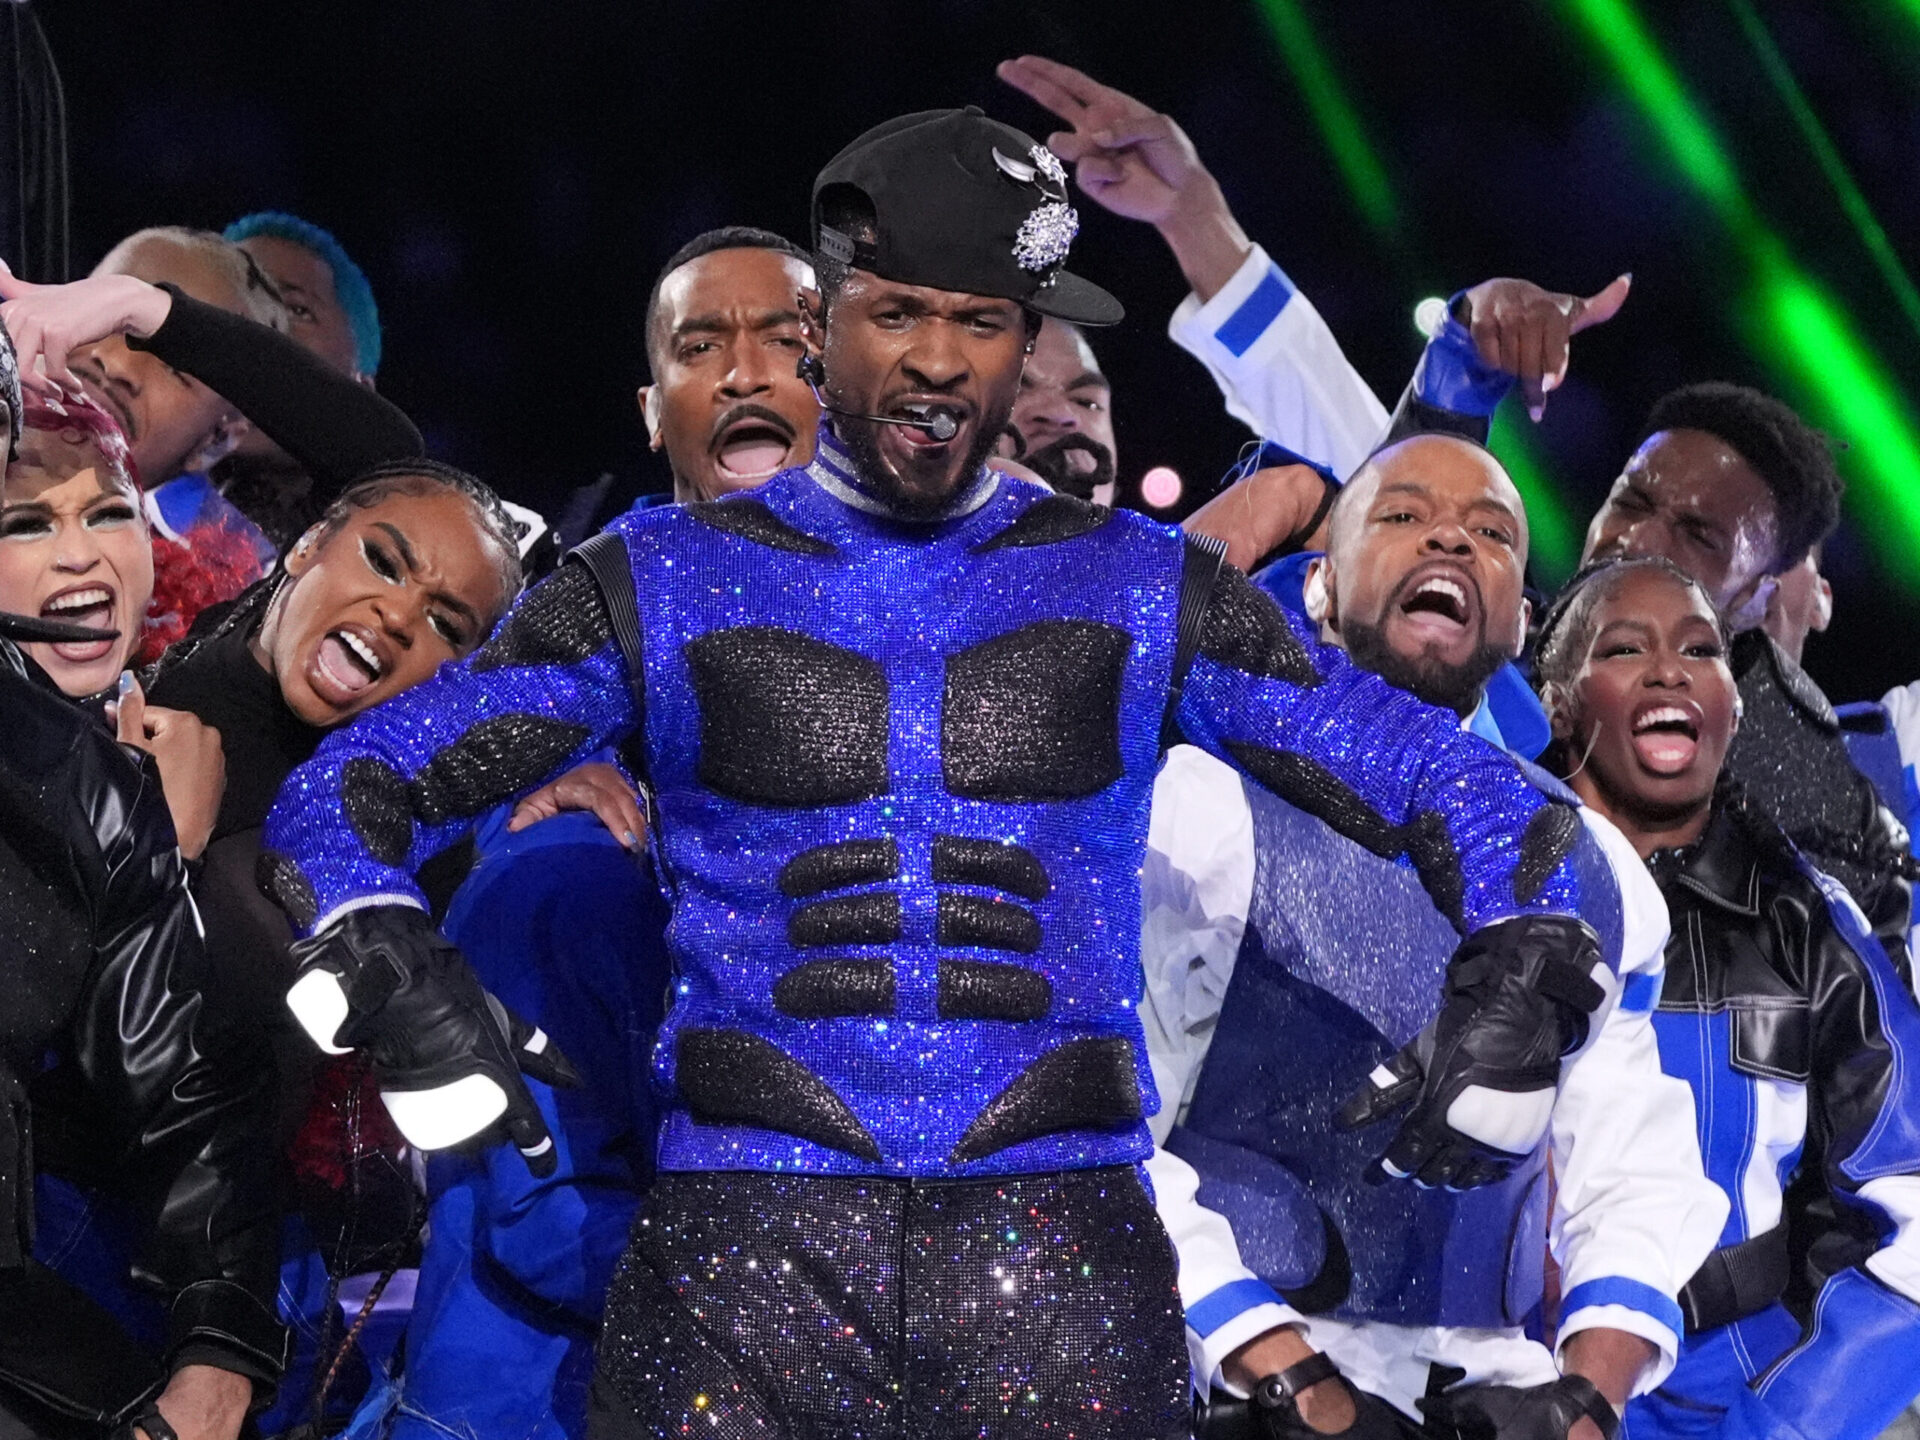 Los memes destrozan el espectáculo de Usher en el Super Bowl